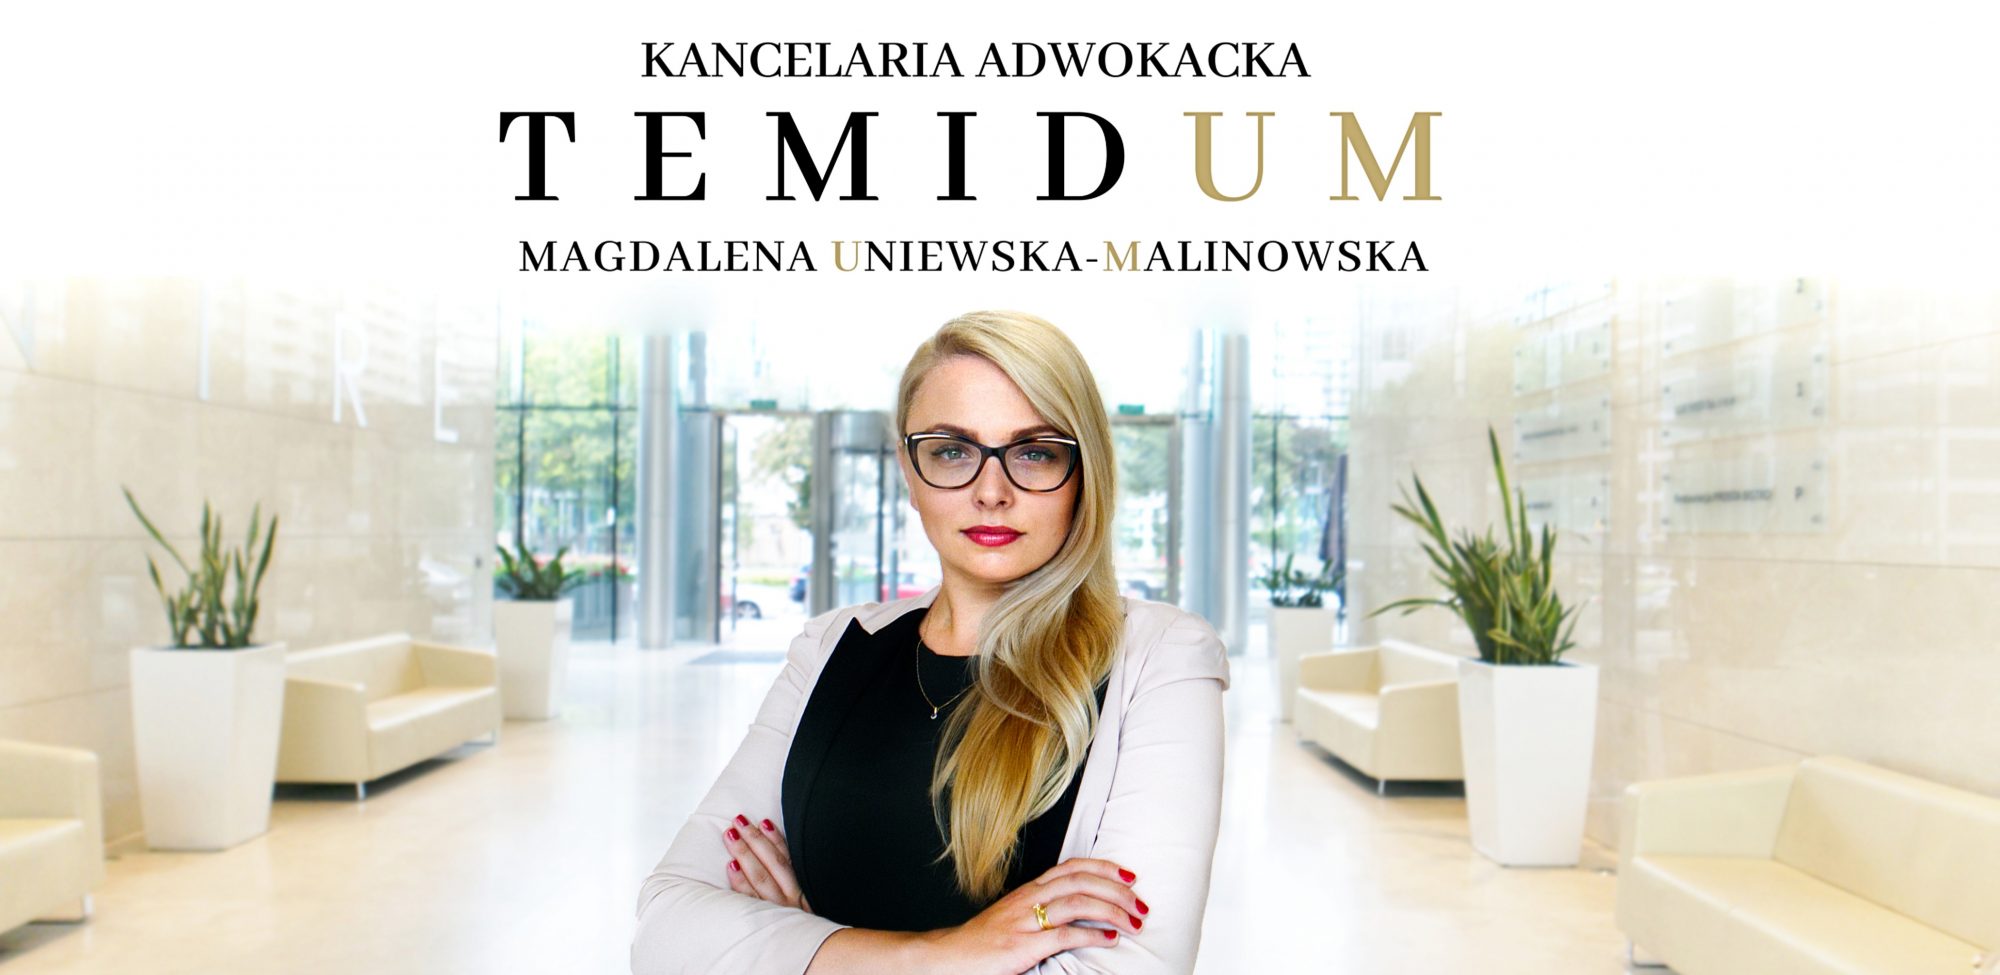 Magdalena Uniewska-Malinowska